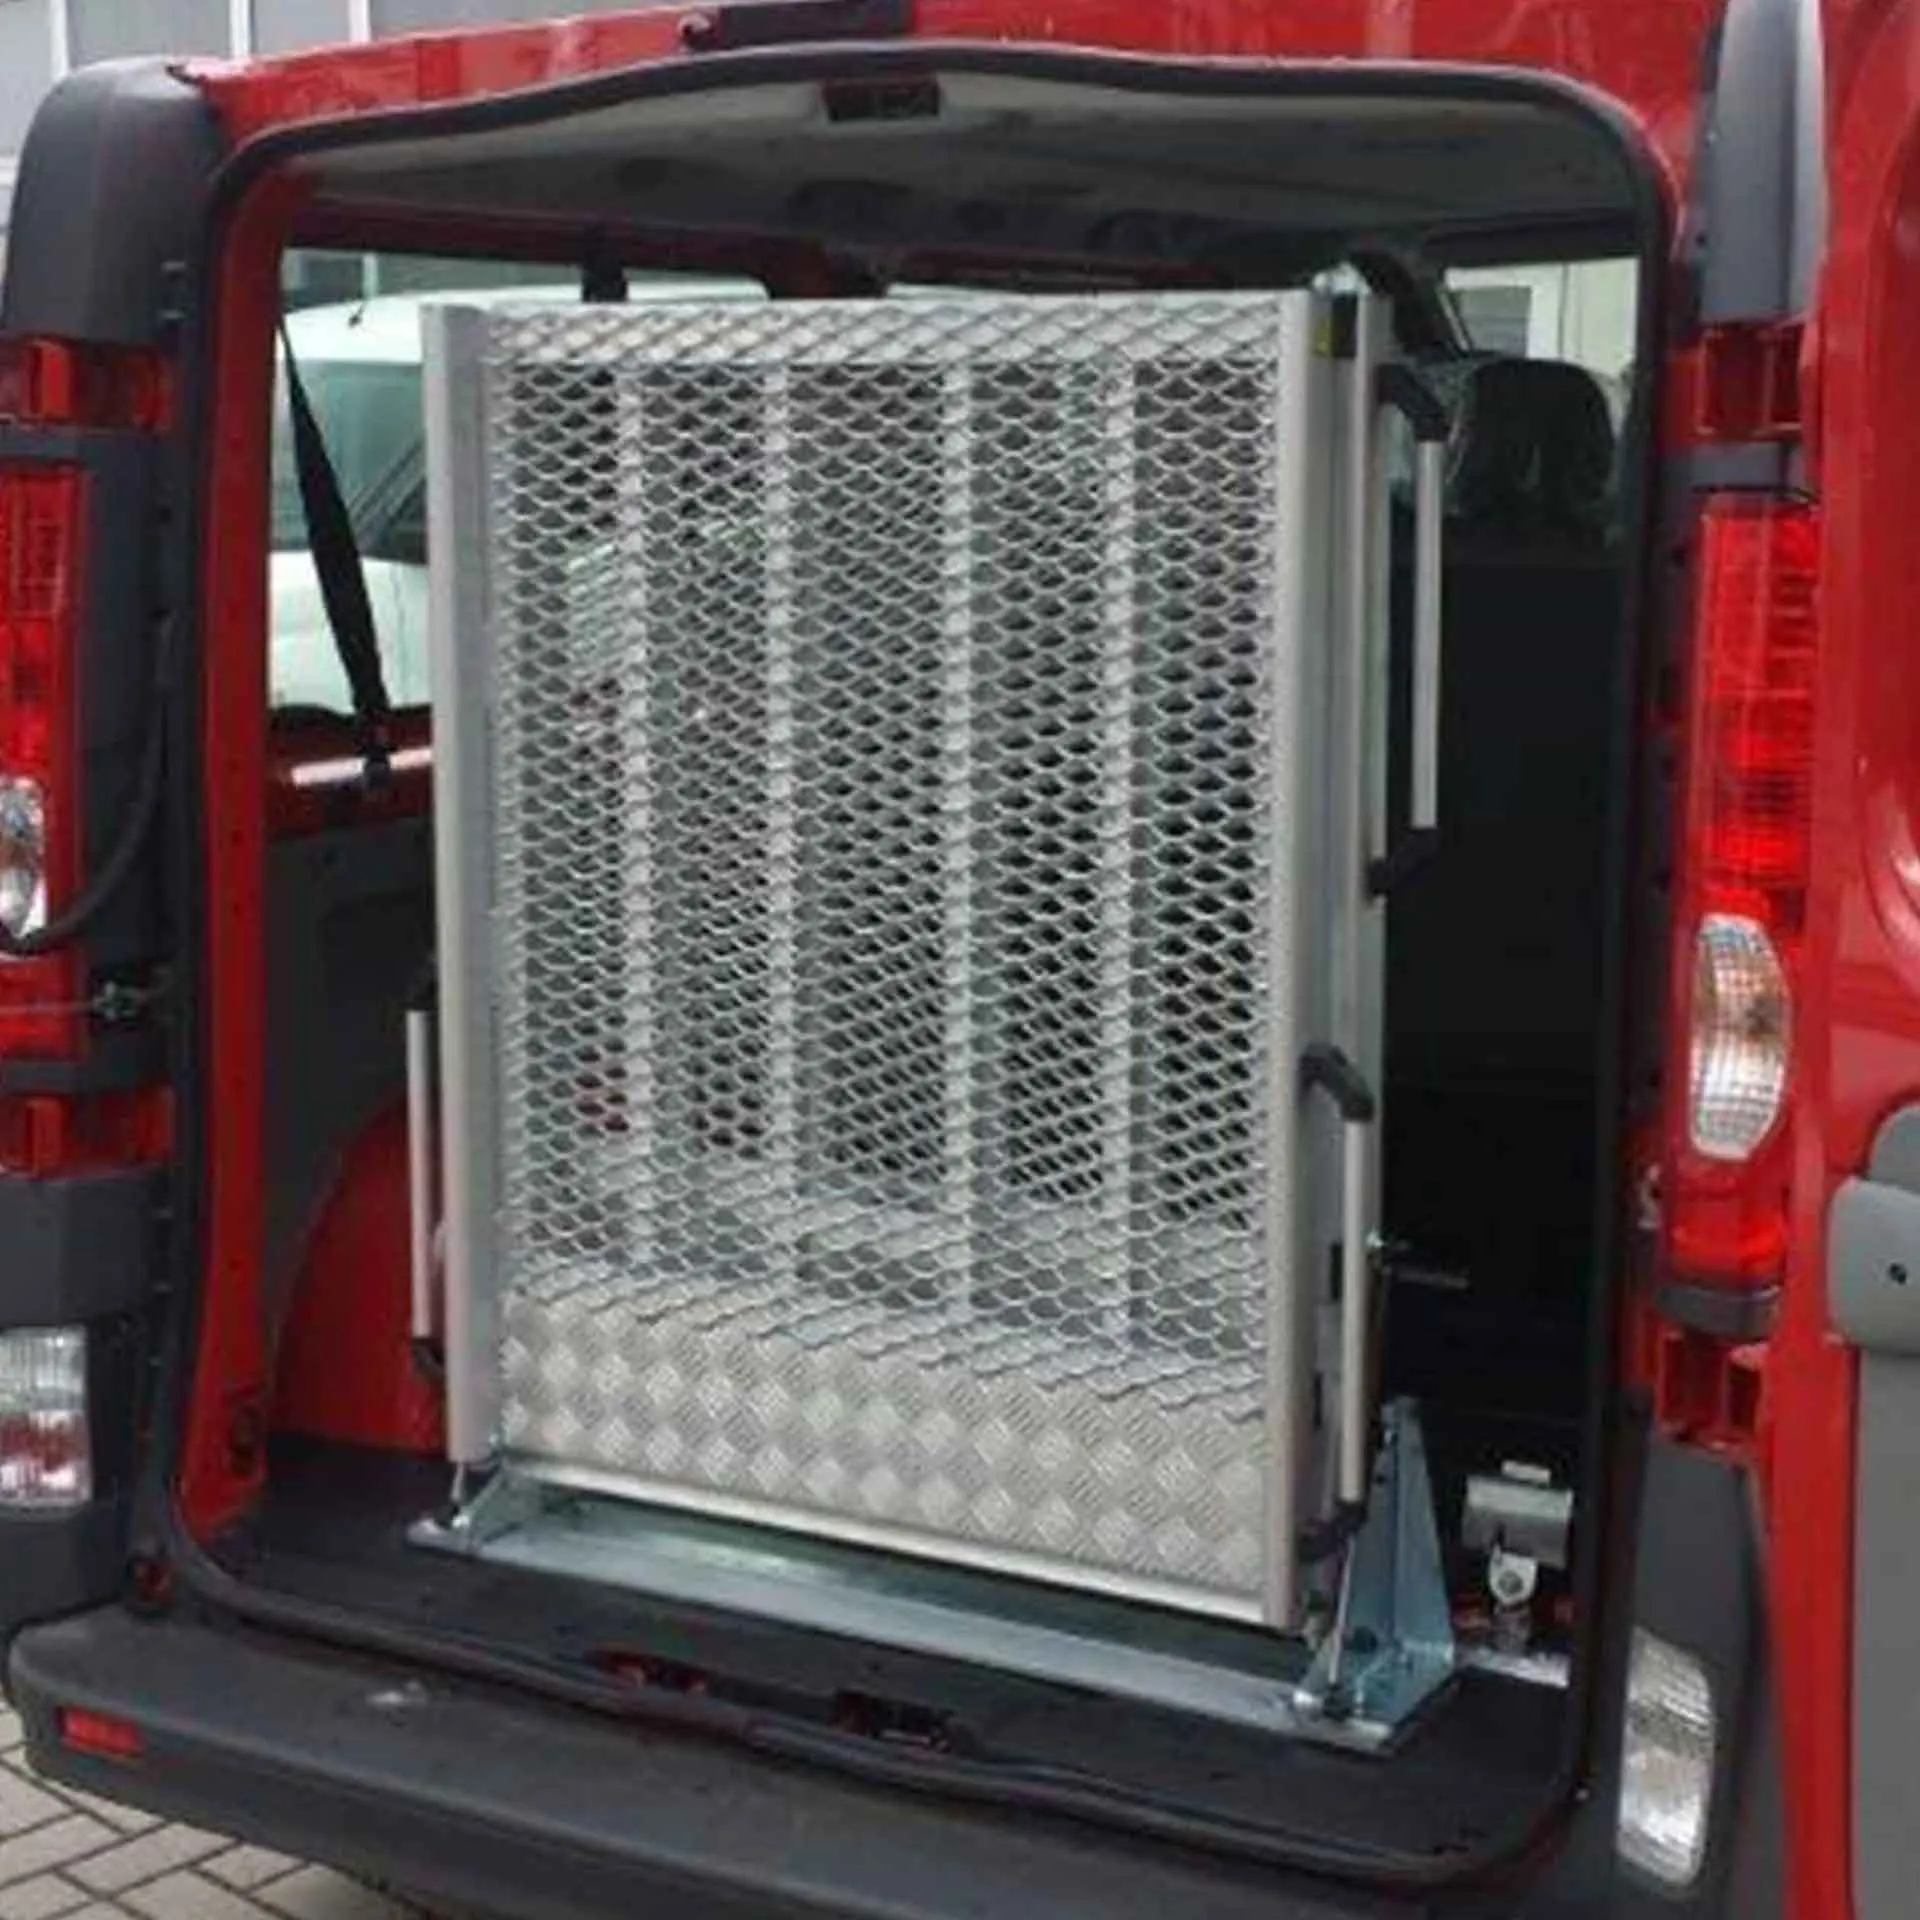 Serie EASY | Fest montierte Rollstuhlrampe für Kleinbusse - Abmessung 2.200 x 820 mm, mittig klappbar